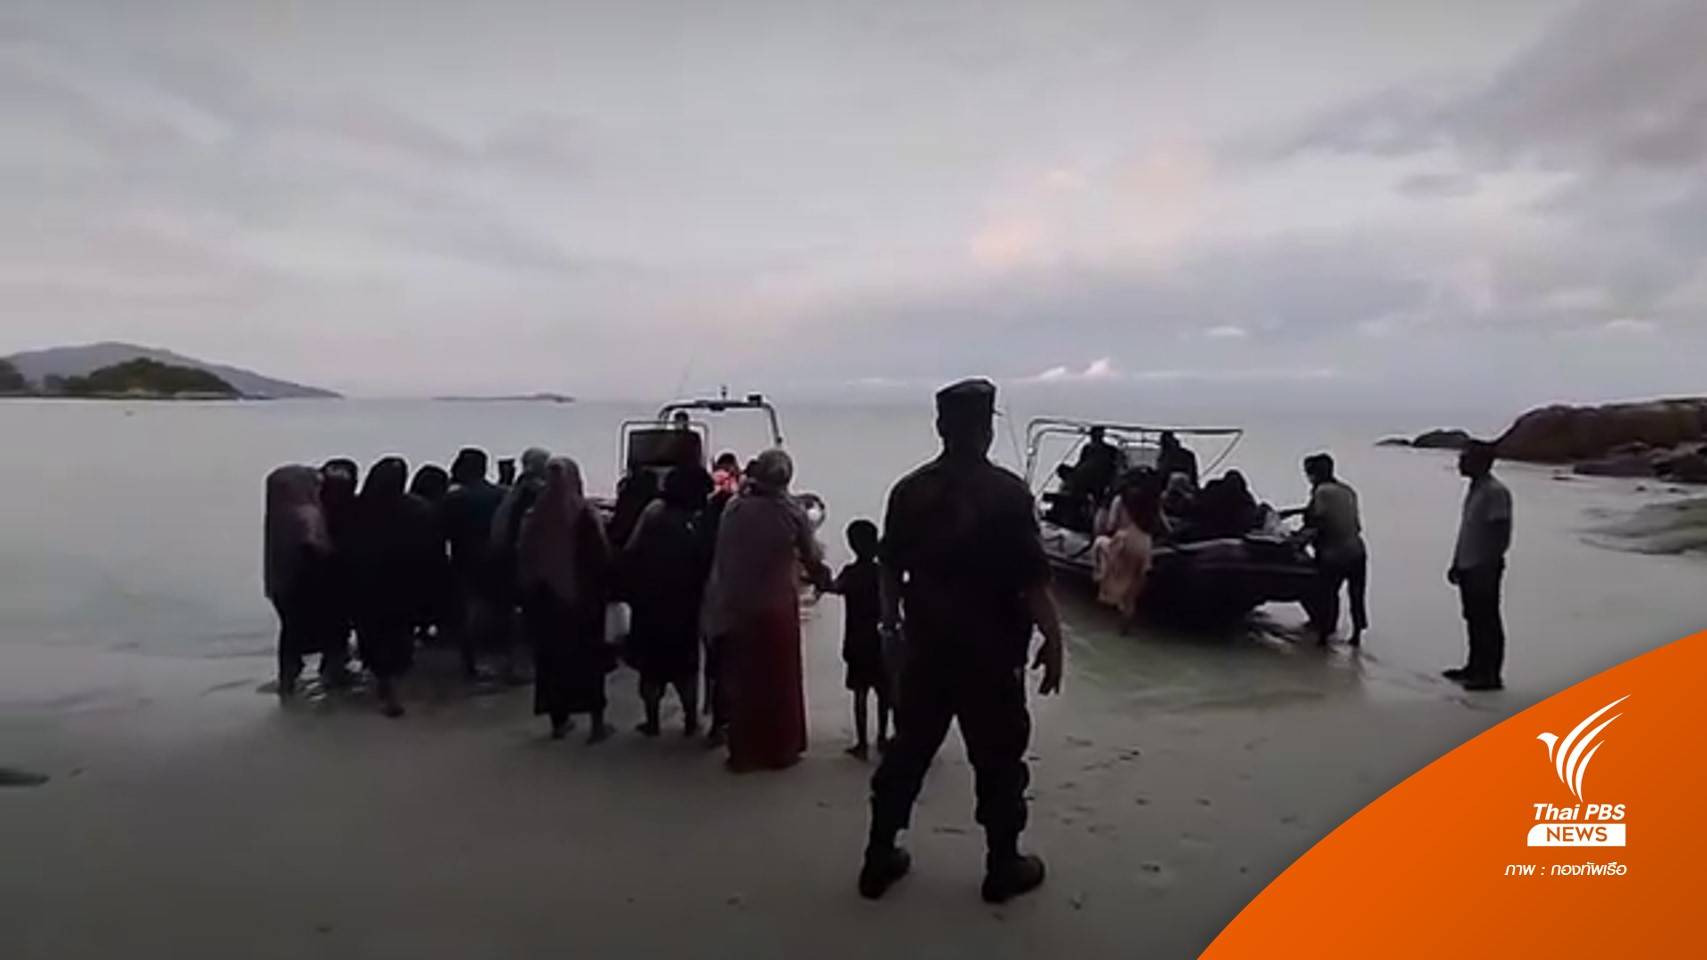 ช่วยโรฮิงญา 59 คน จากเกาะดงขึ้นฝั่ง รอขยายผลหาผู้เกี่ยวข้อง